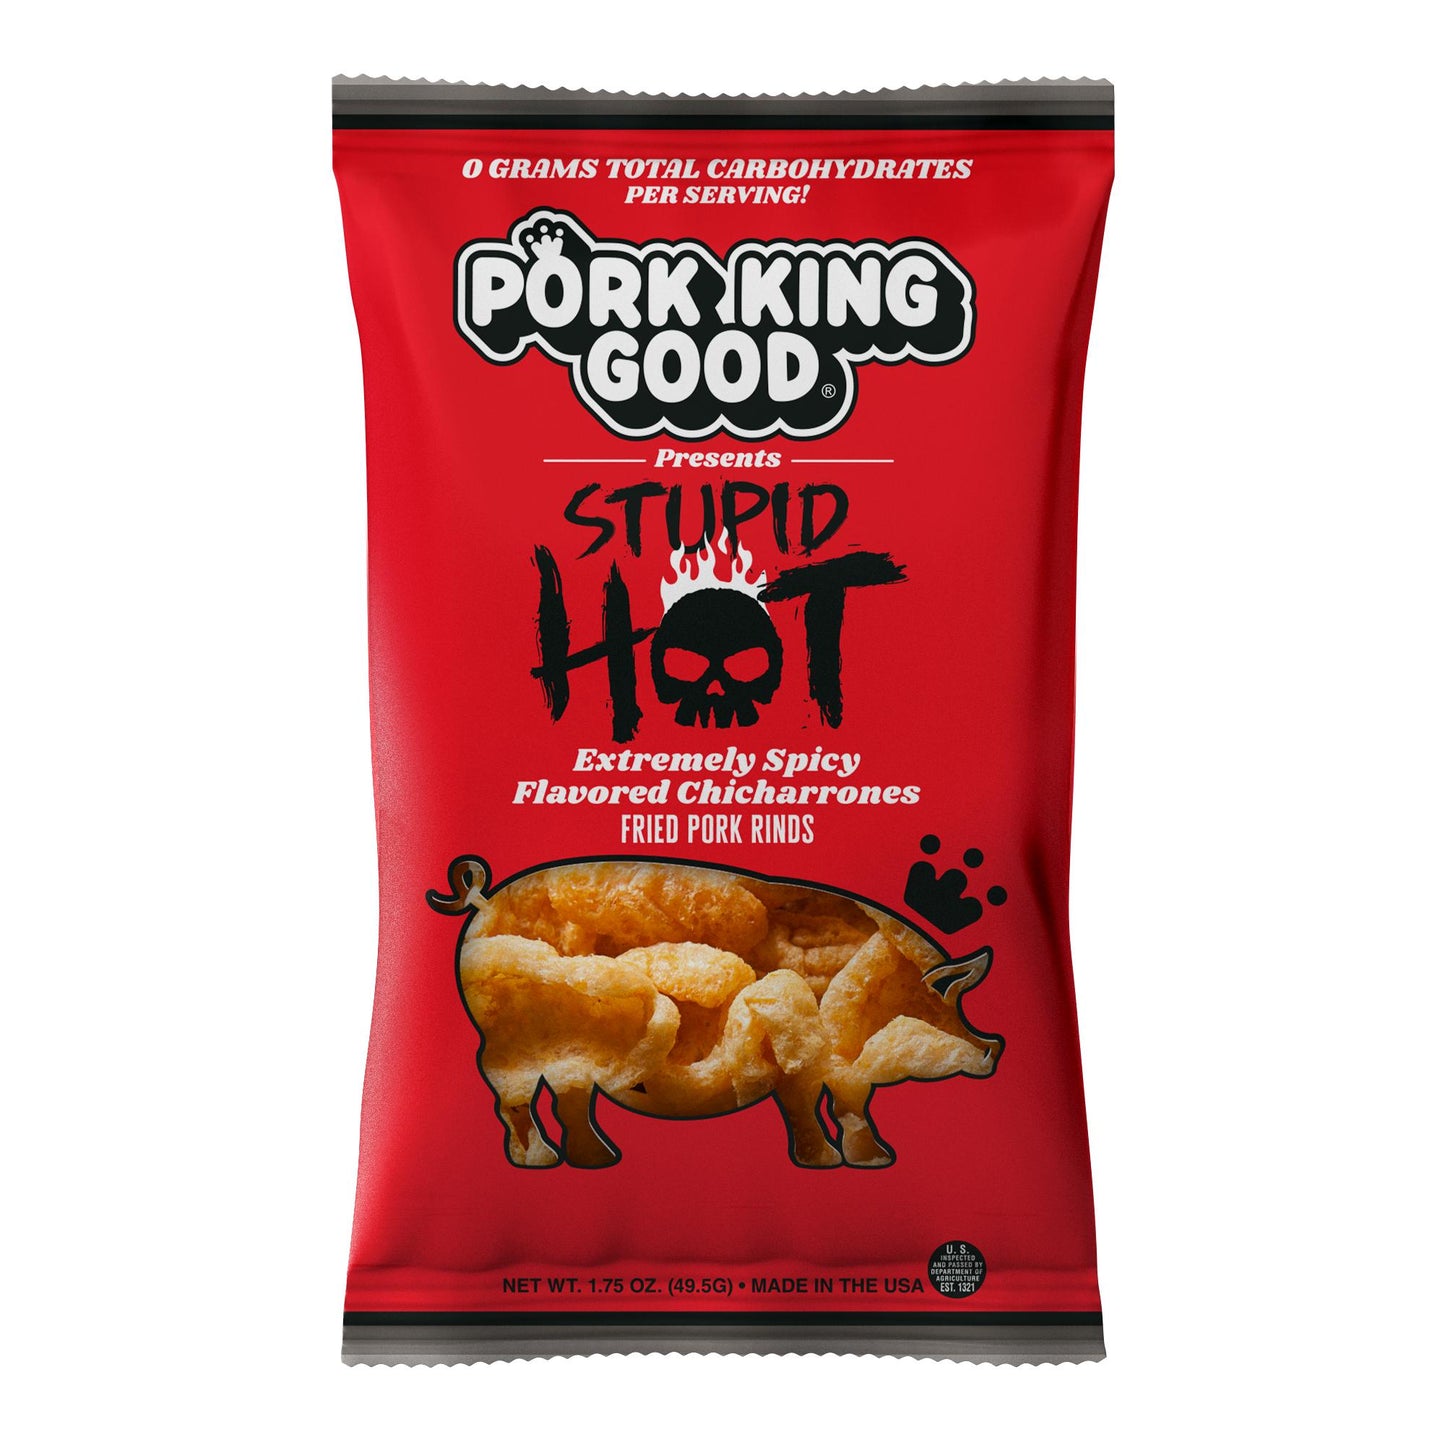 THE MOTHERLOAD Pork King Good Bundle